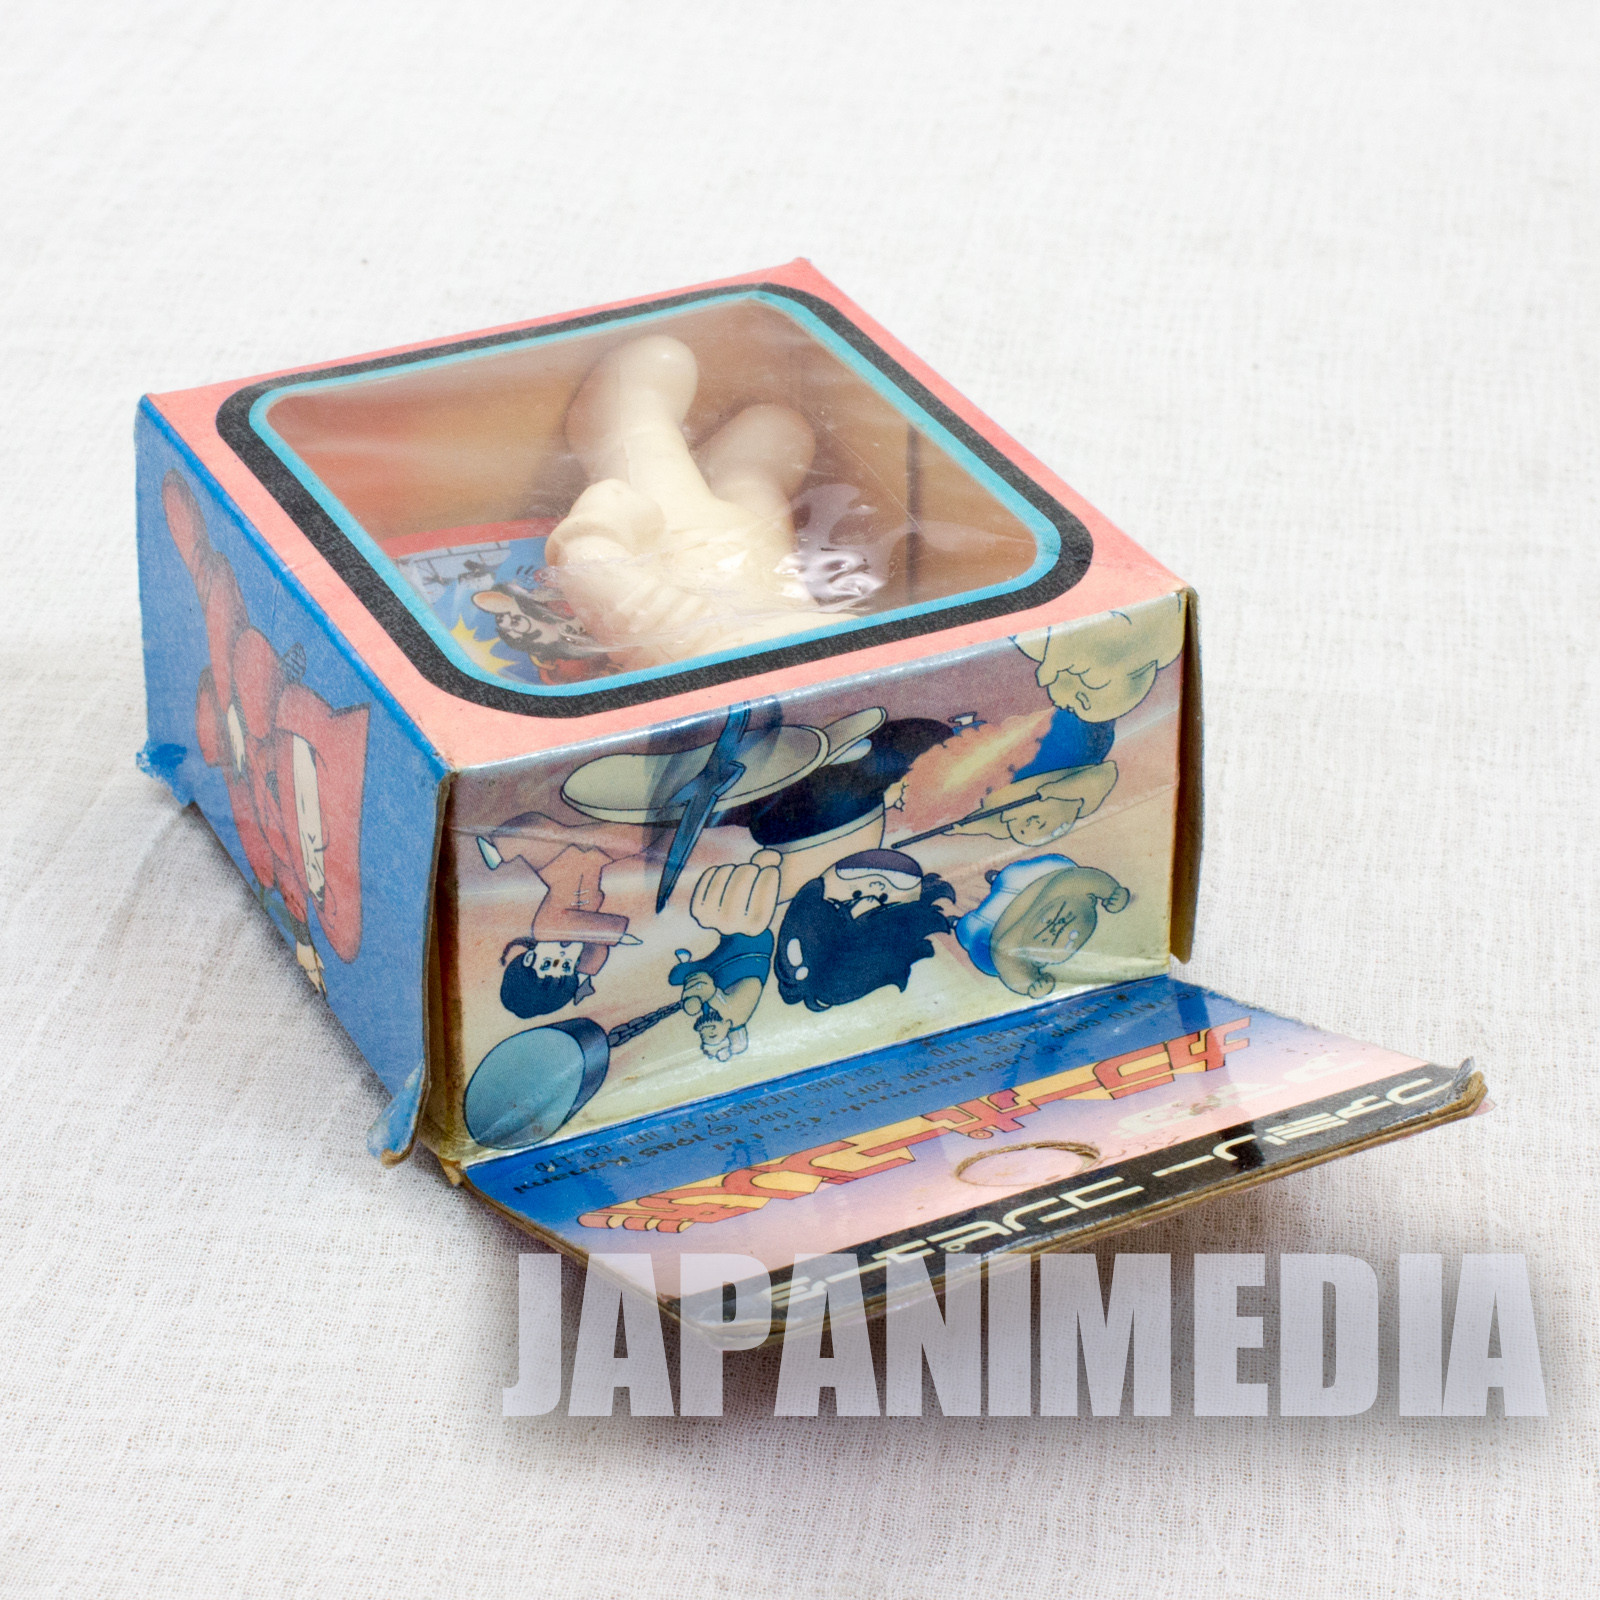 Retro RARE! Lode Runner Rubber Figure Doll JAPAN NES FAMICOM